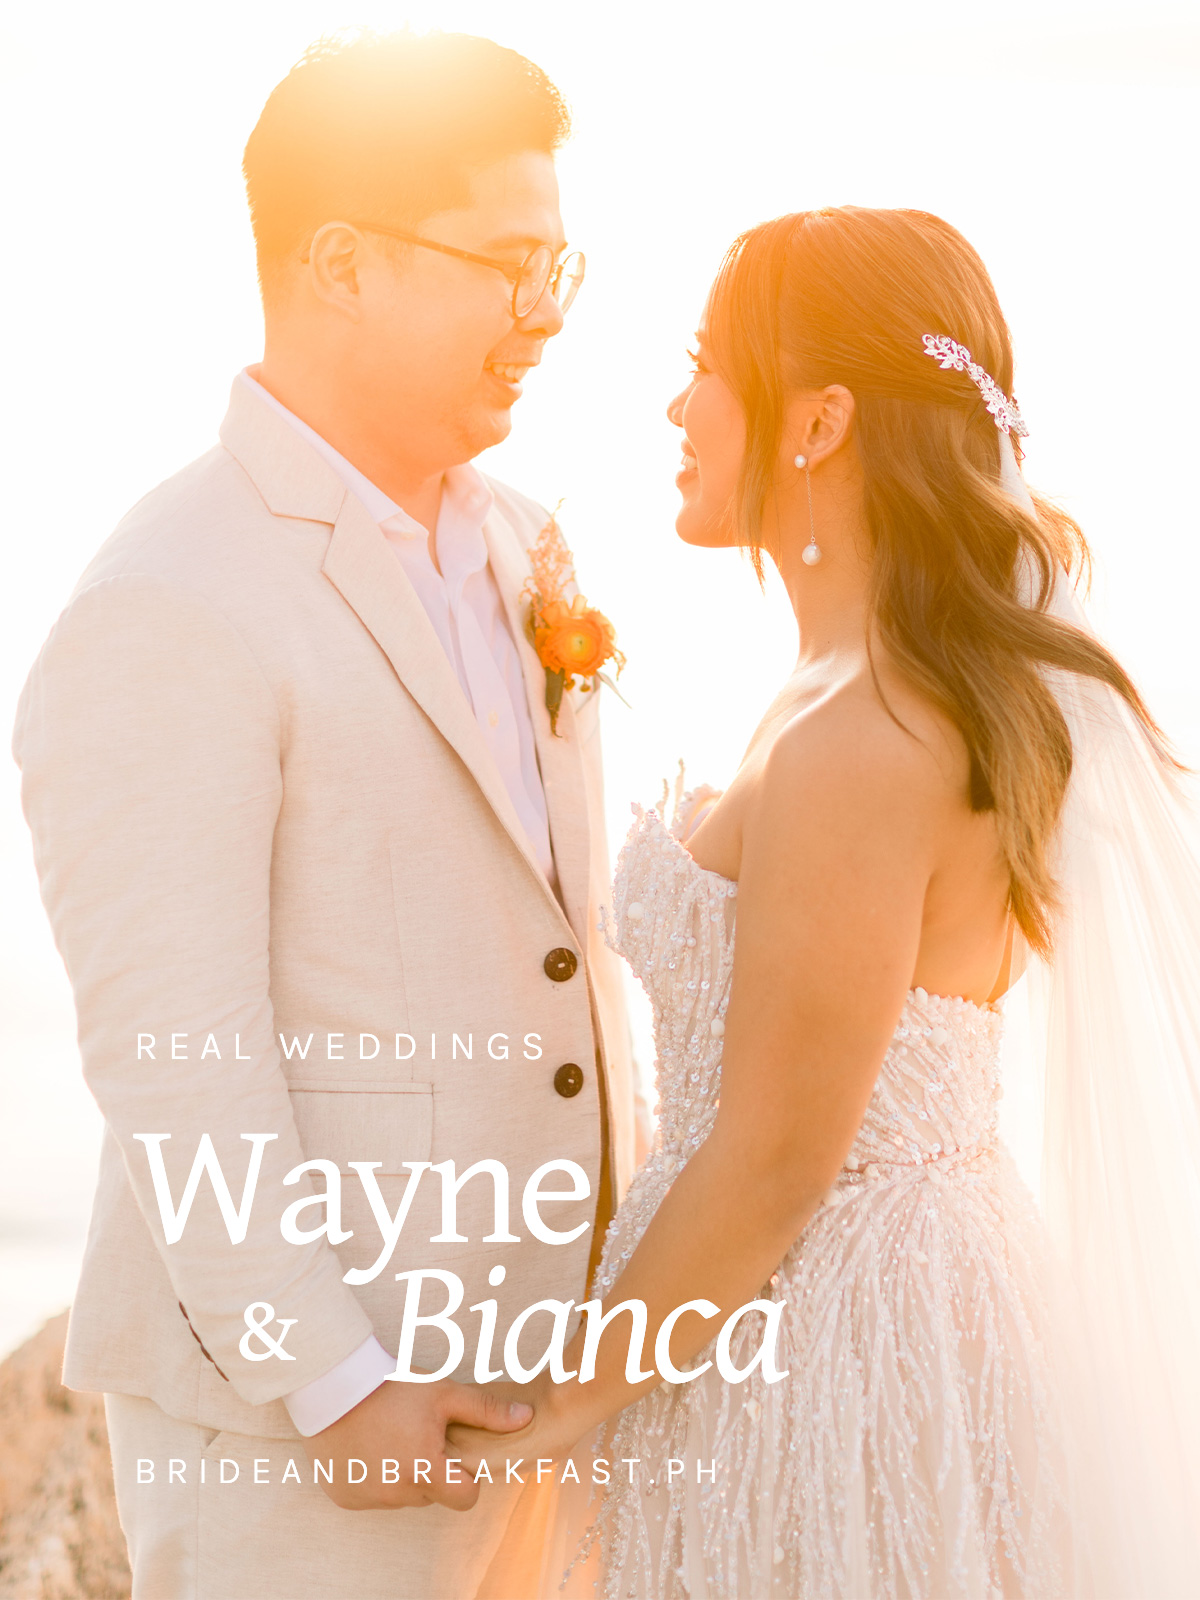 Wayne and Bianca